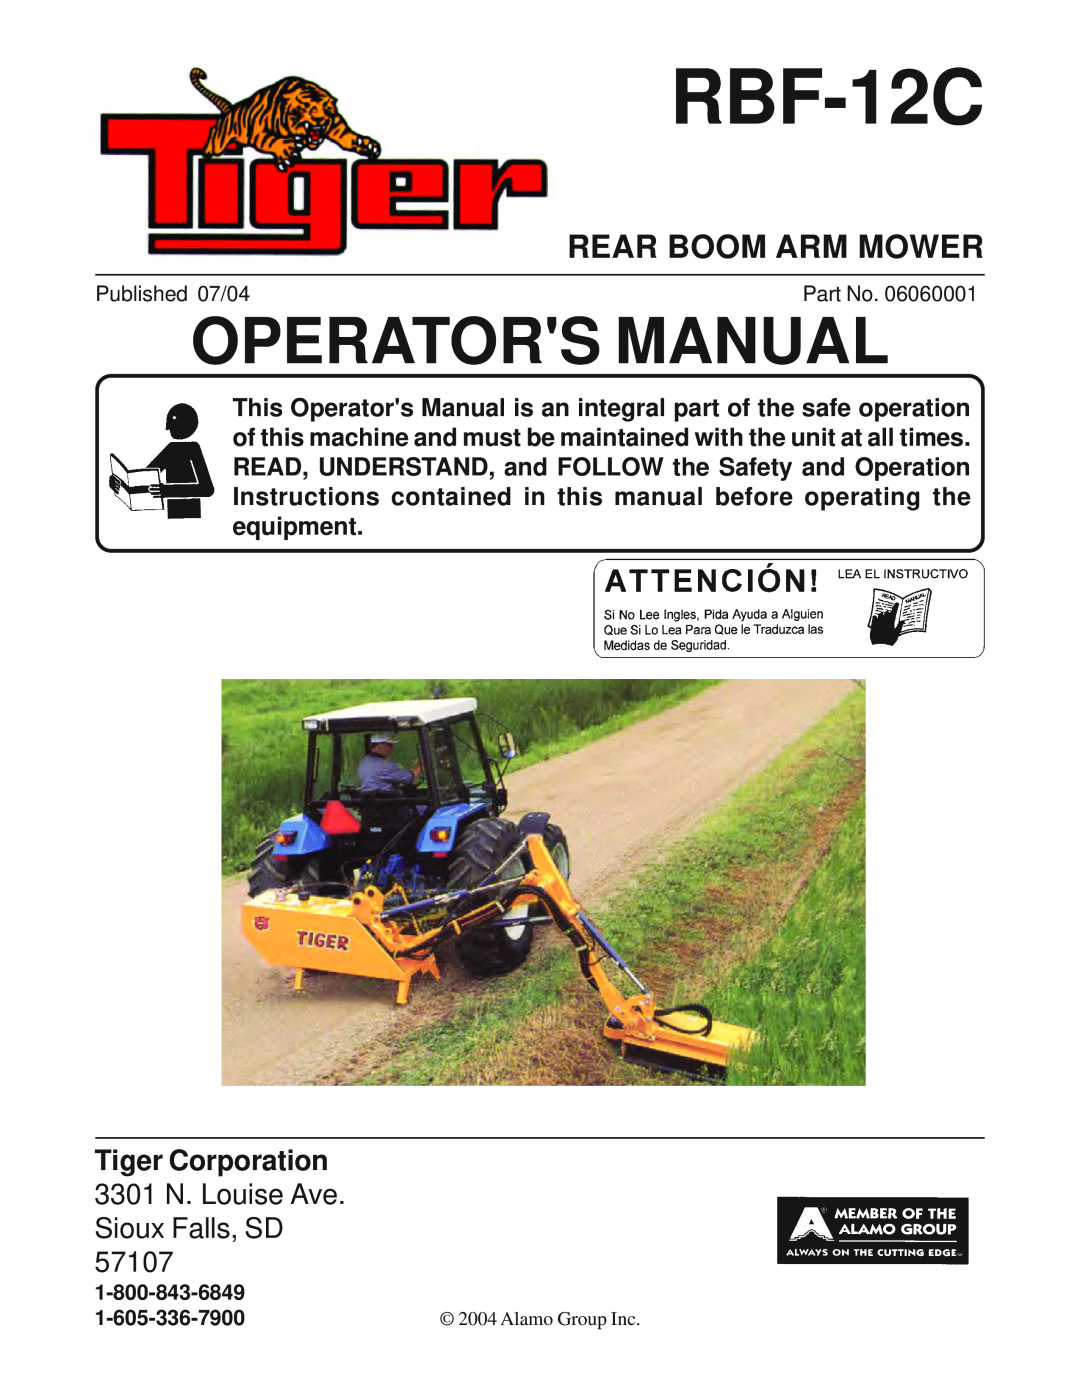 Tiger Products Co., Ltd RBF-12C manual Rear Boom Arm Mower, Operators Manual 